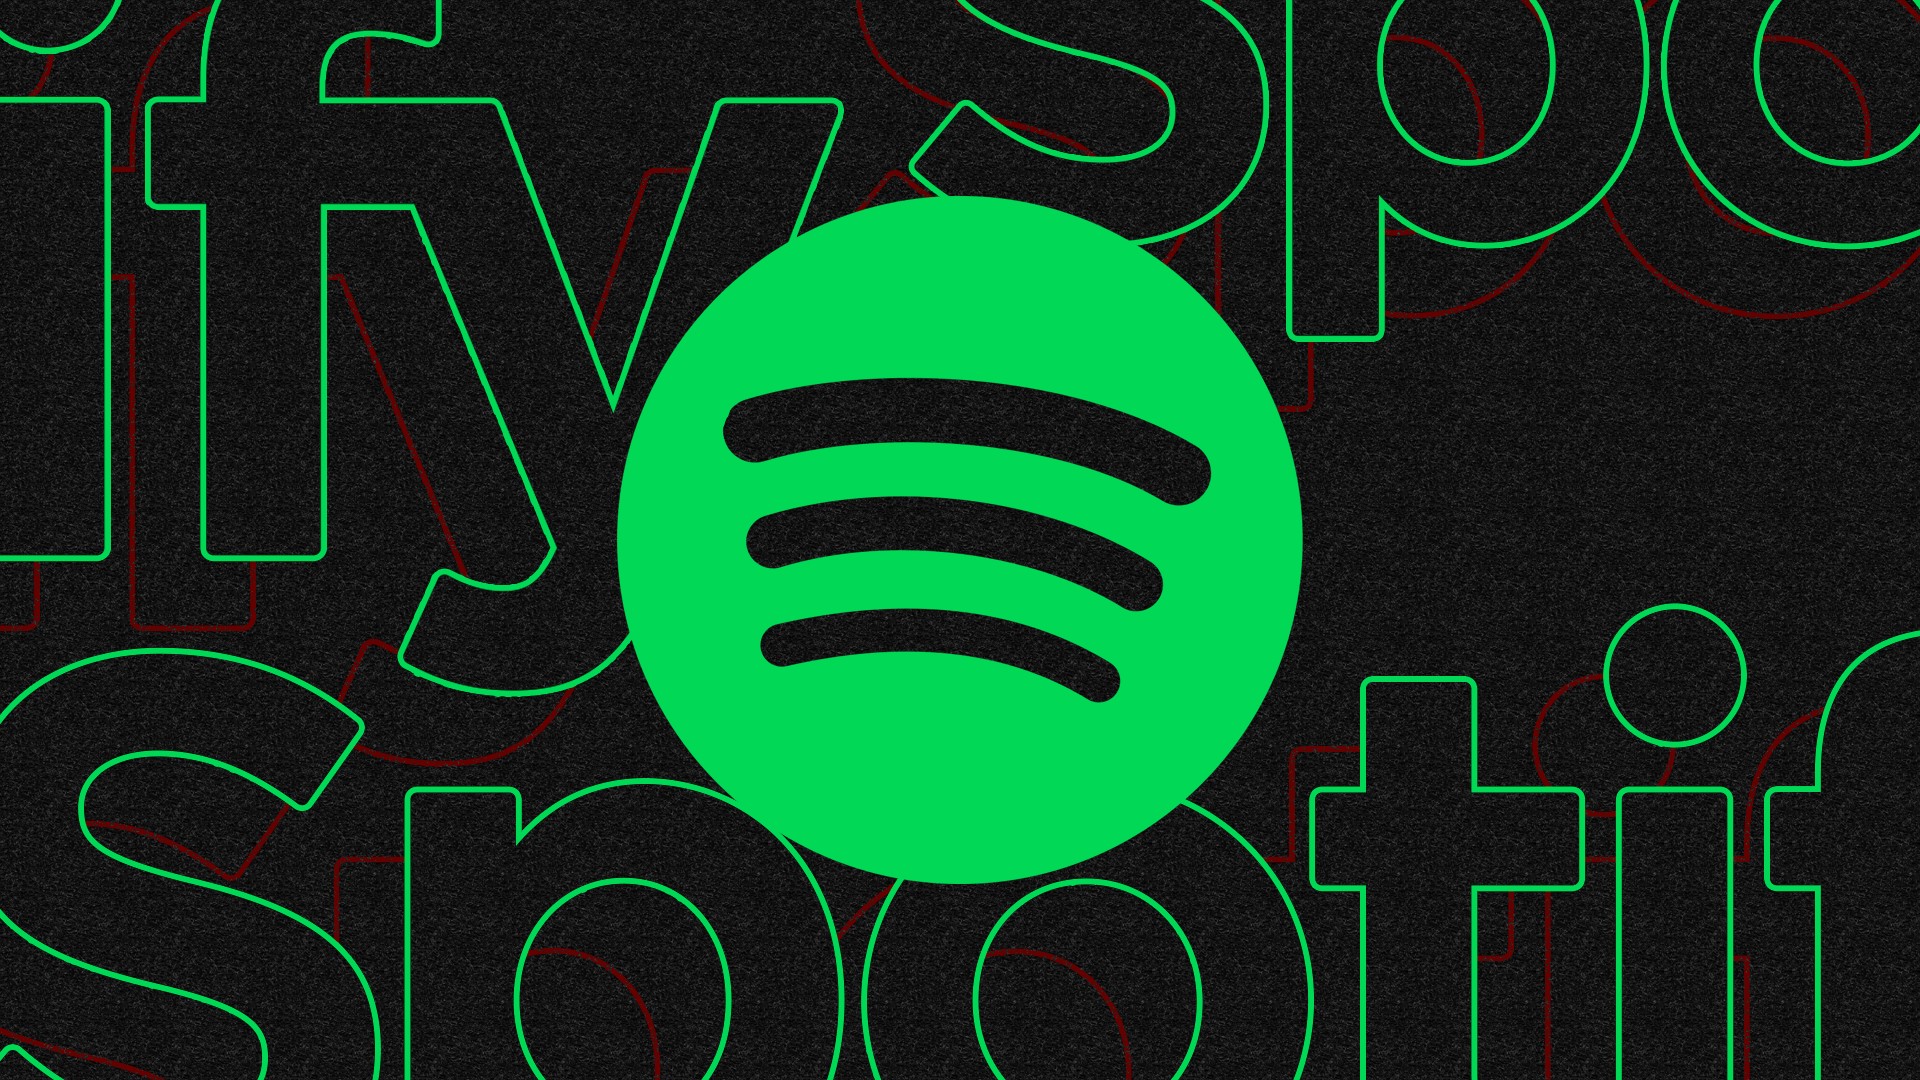 Como entrar em playlists oficiais do Spotify - Crescer no Spotify